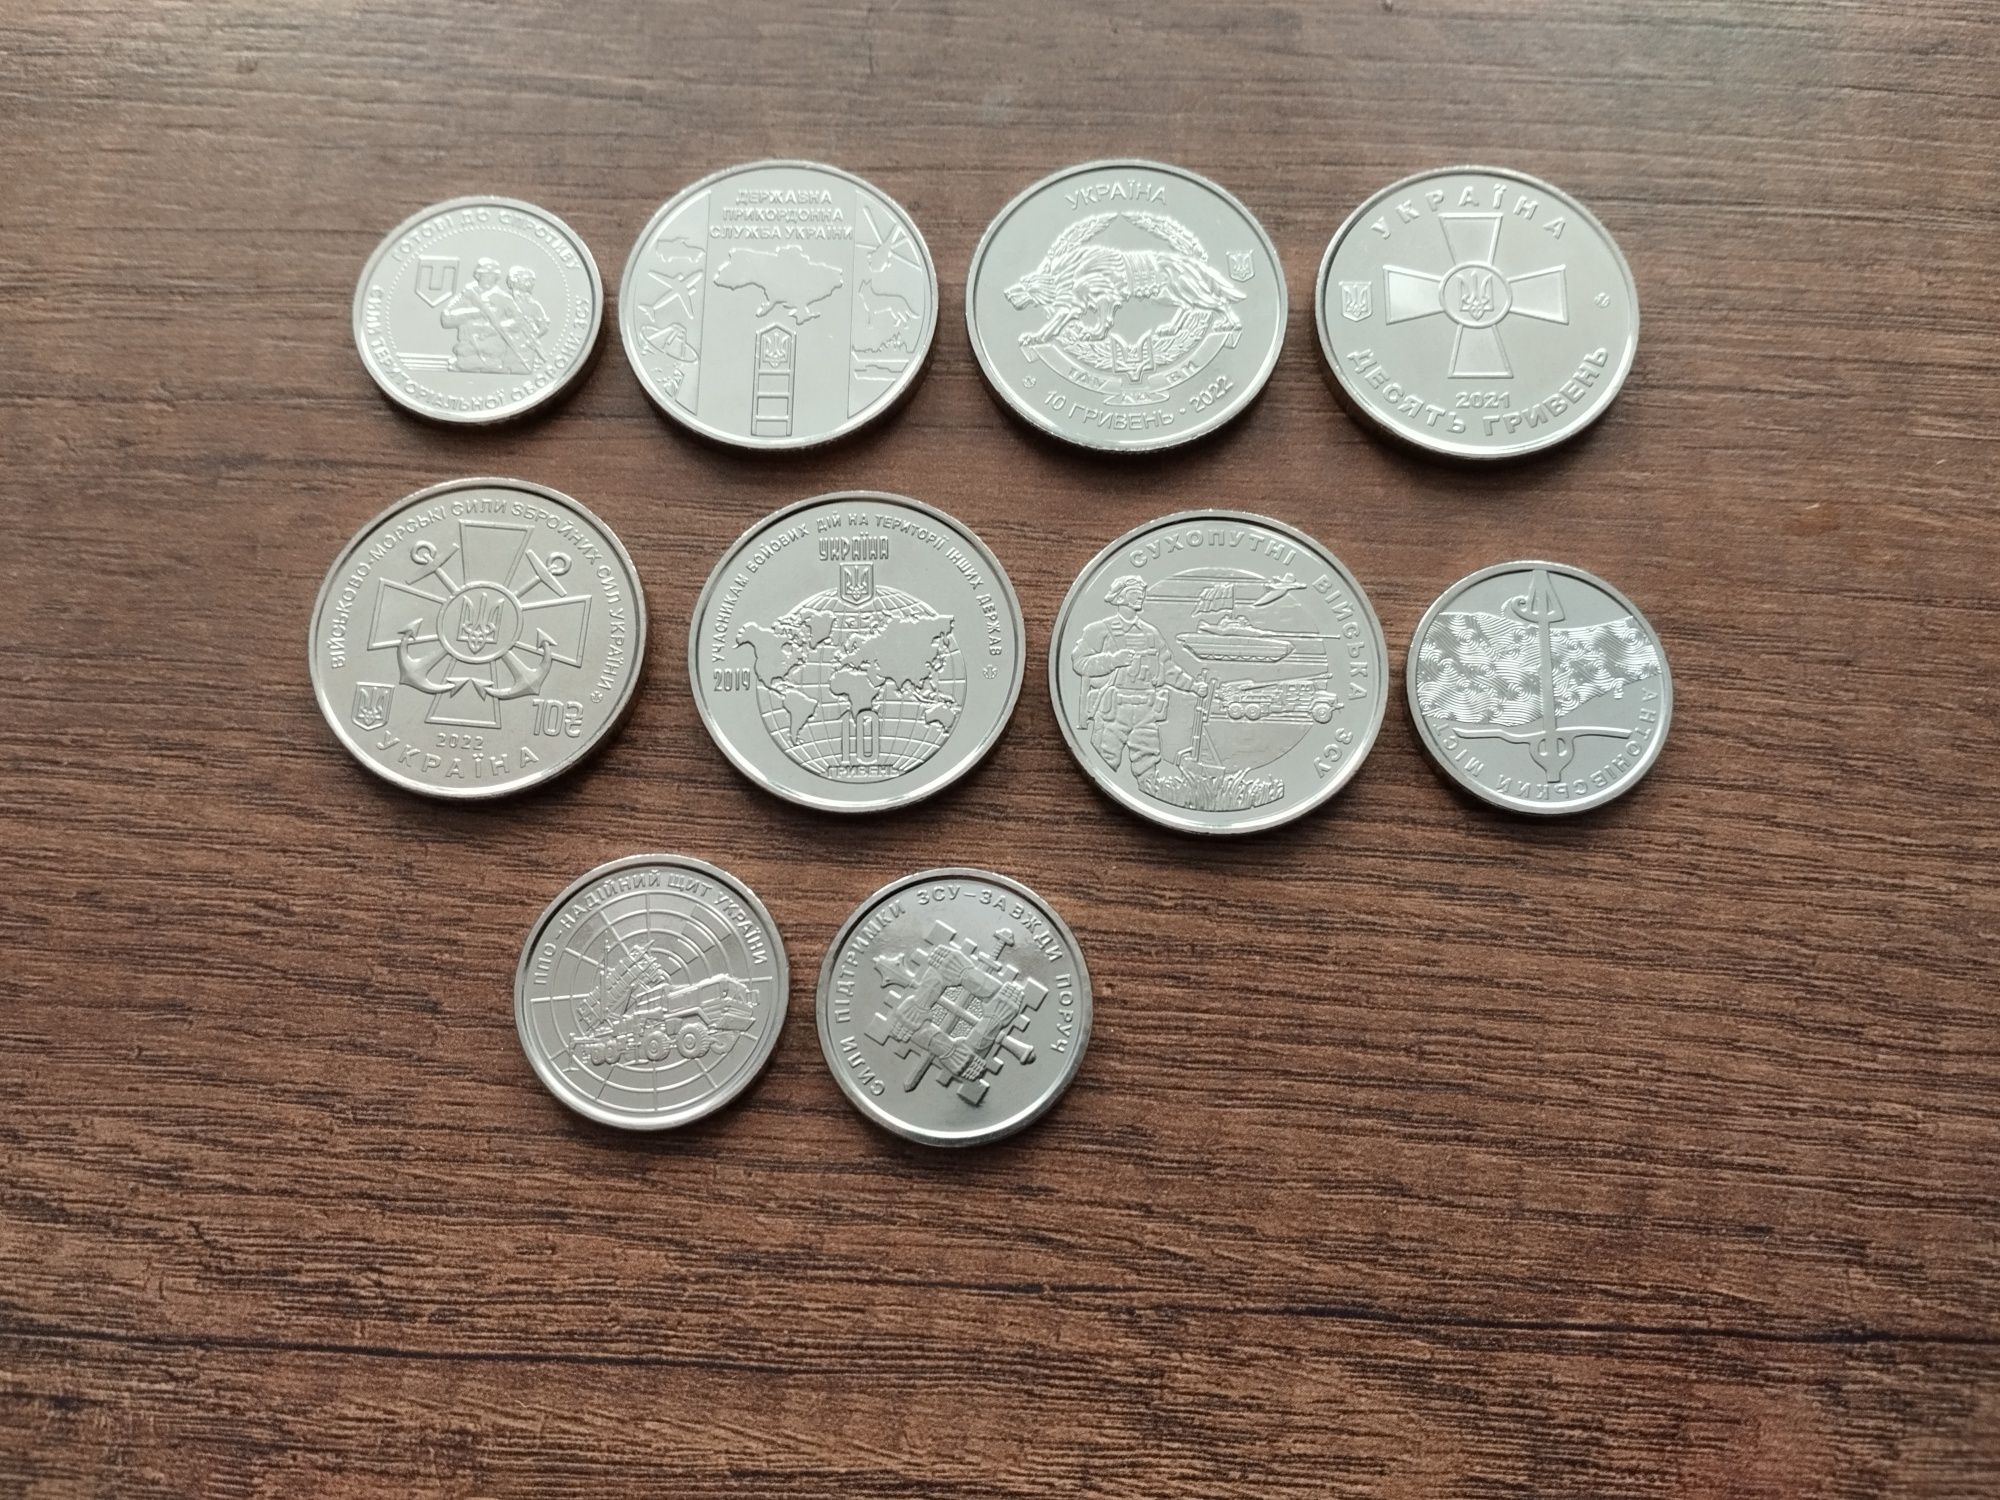 Памятные монеты 10 гривен силы спец операций и другие